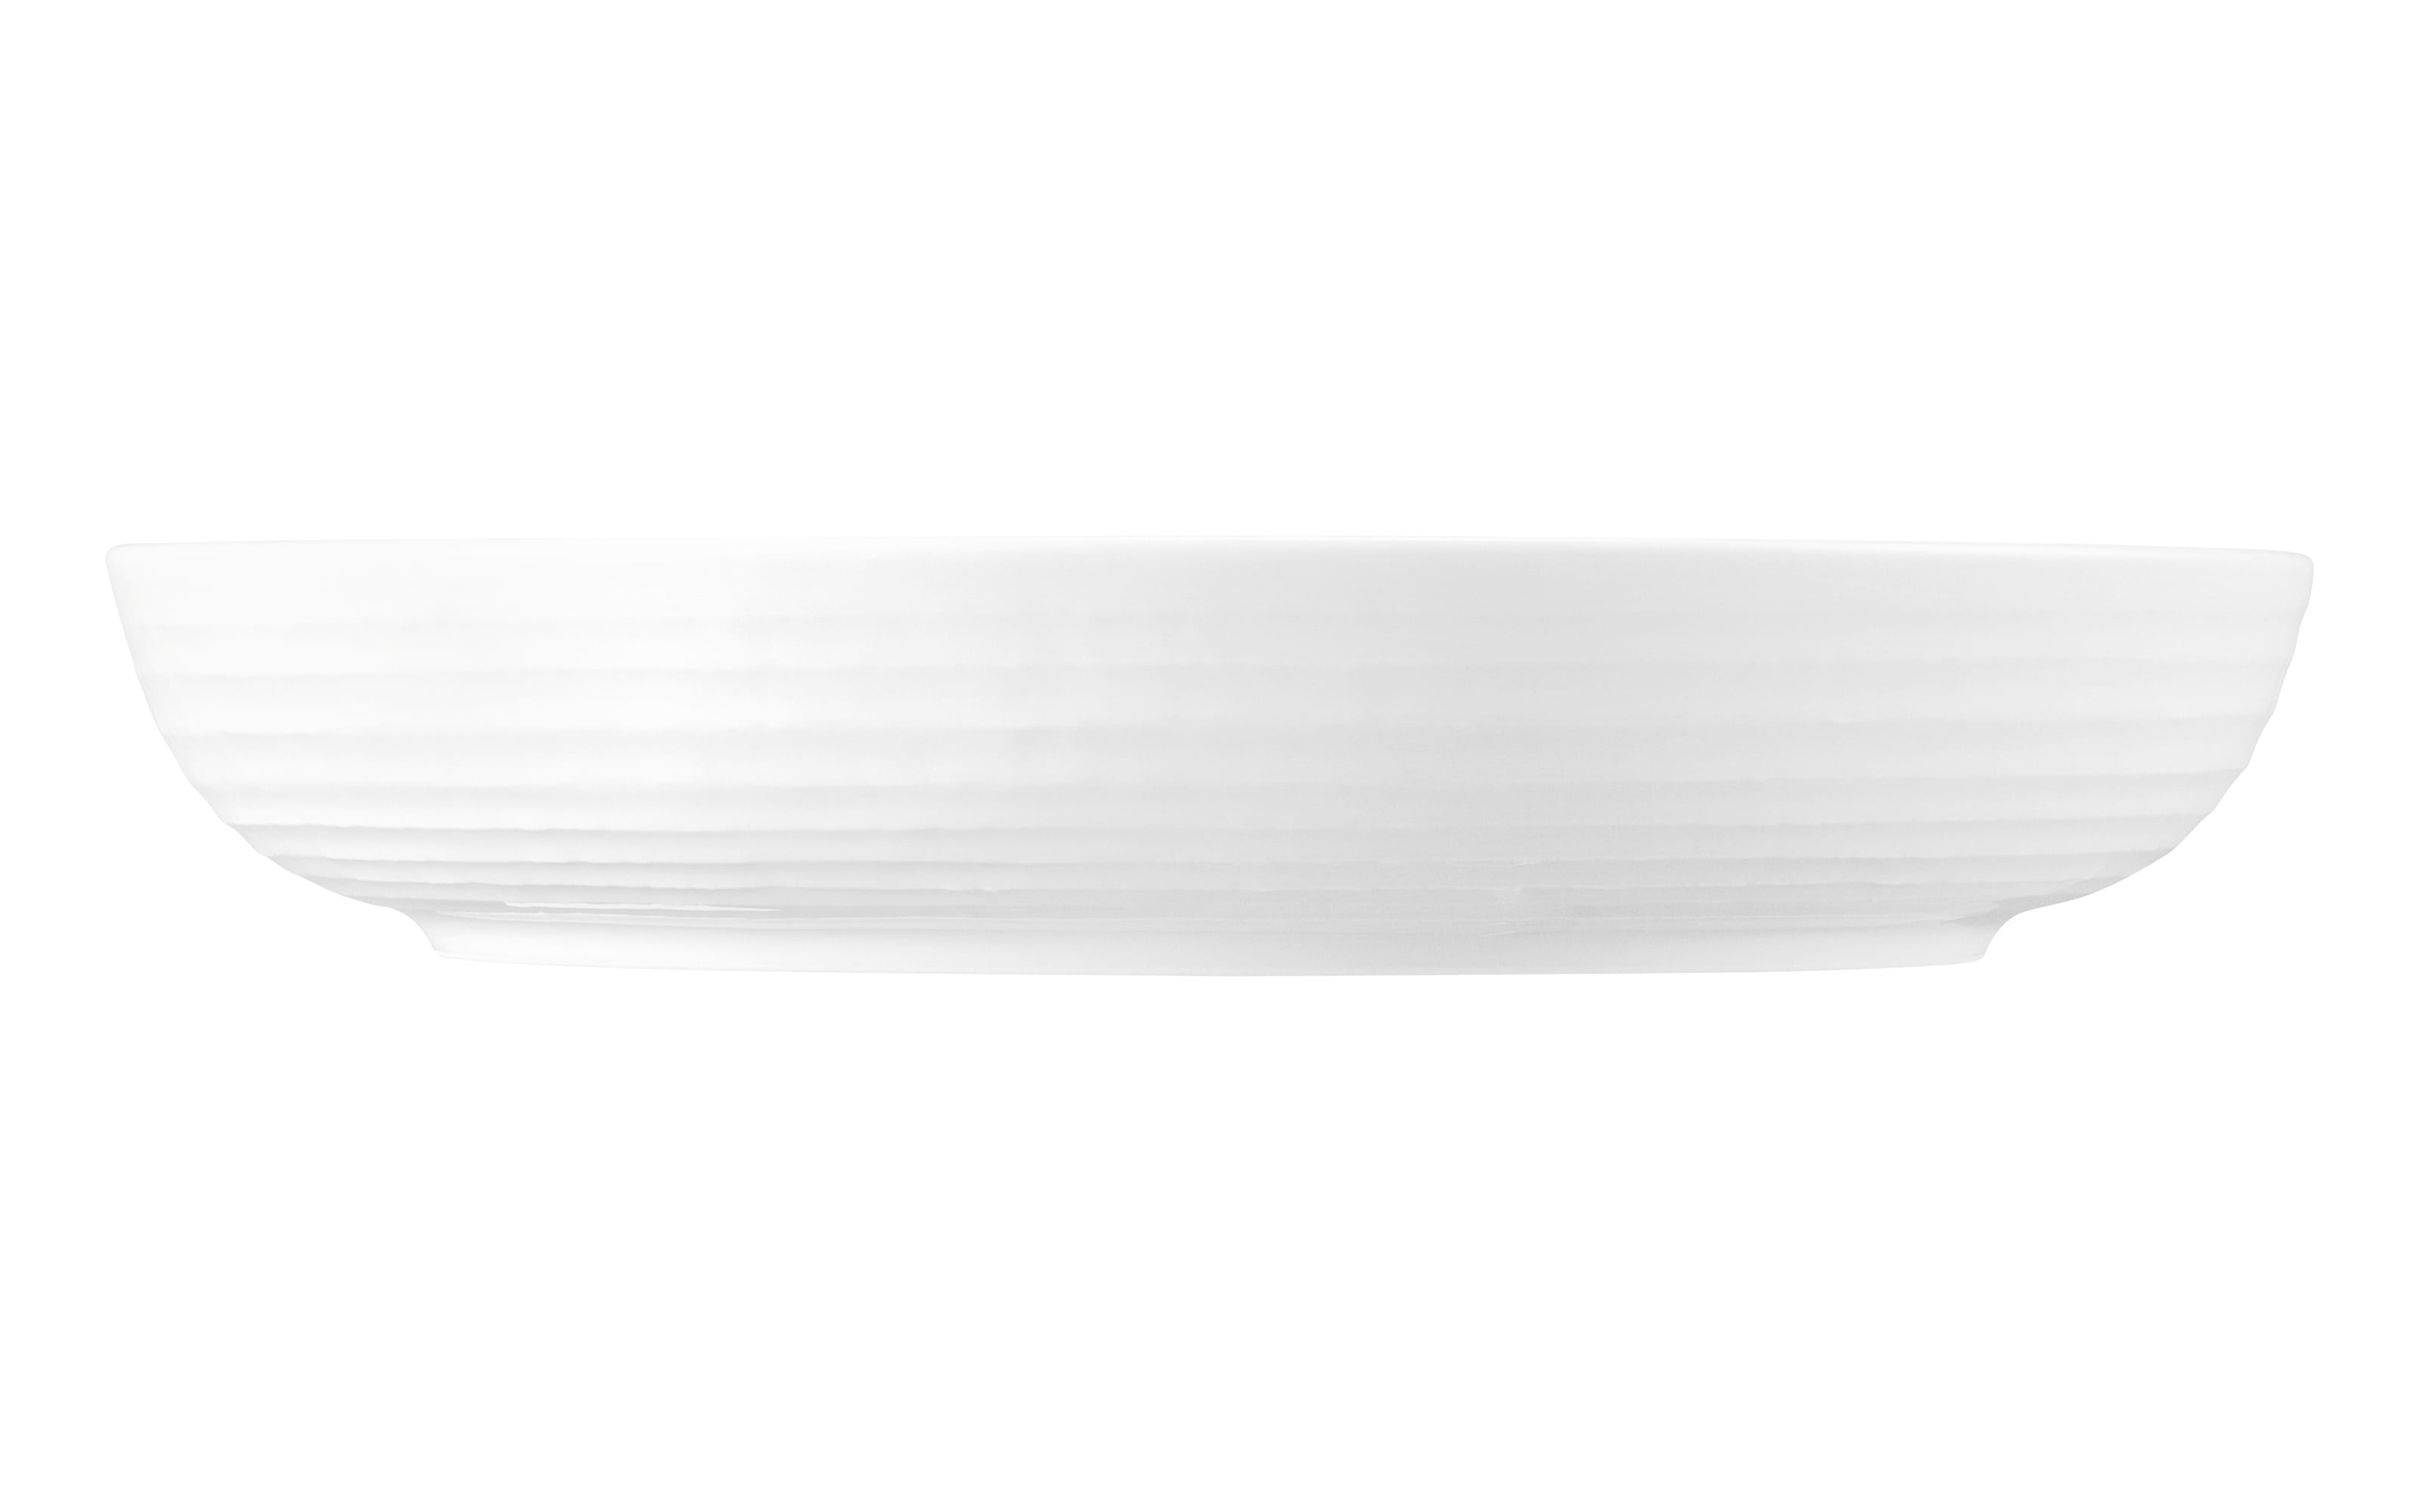 Foodbowl Terra, weiß, 28 cm